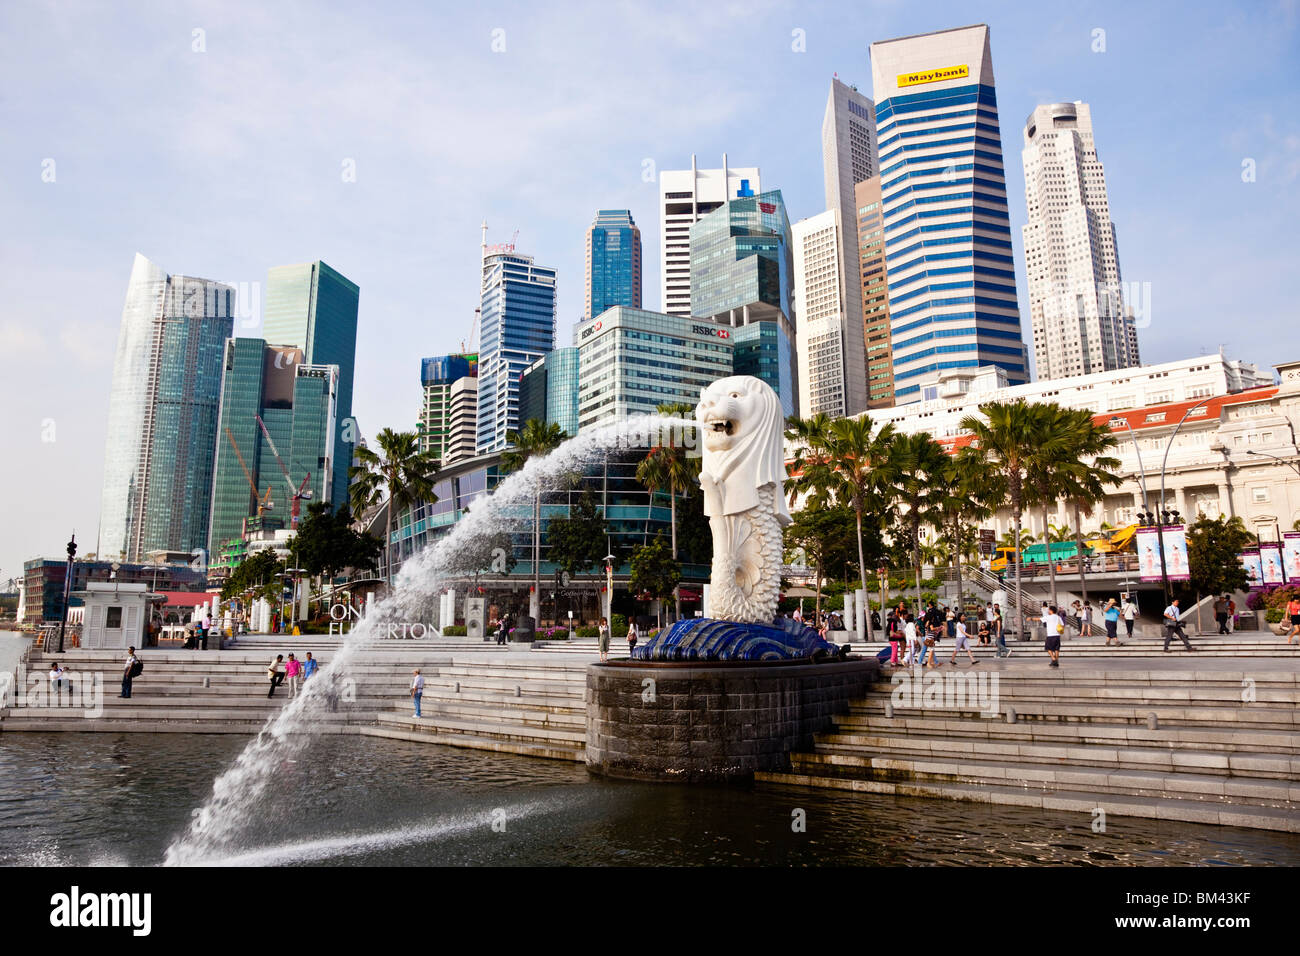 La statue du Merlion et sur les toits de la ville, l'Esplanade, à Singapour Banque D'Images